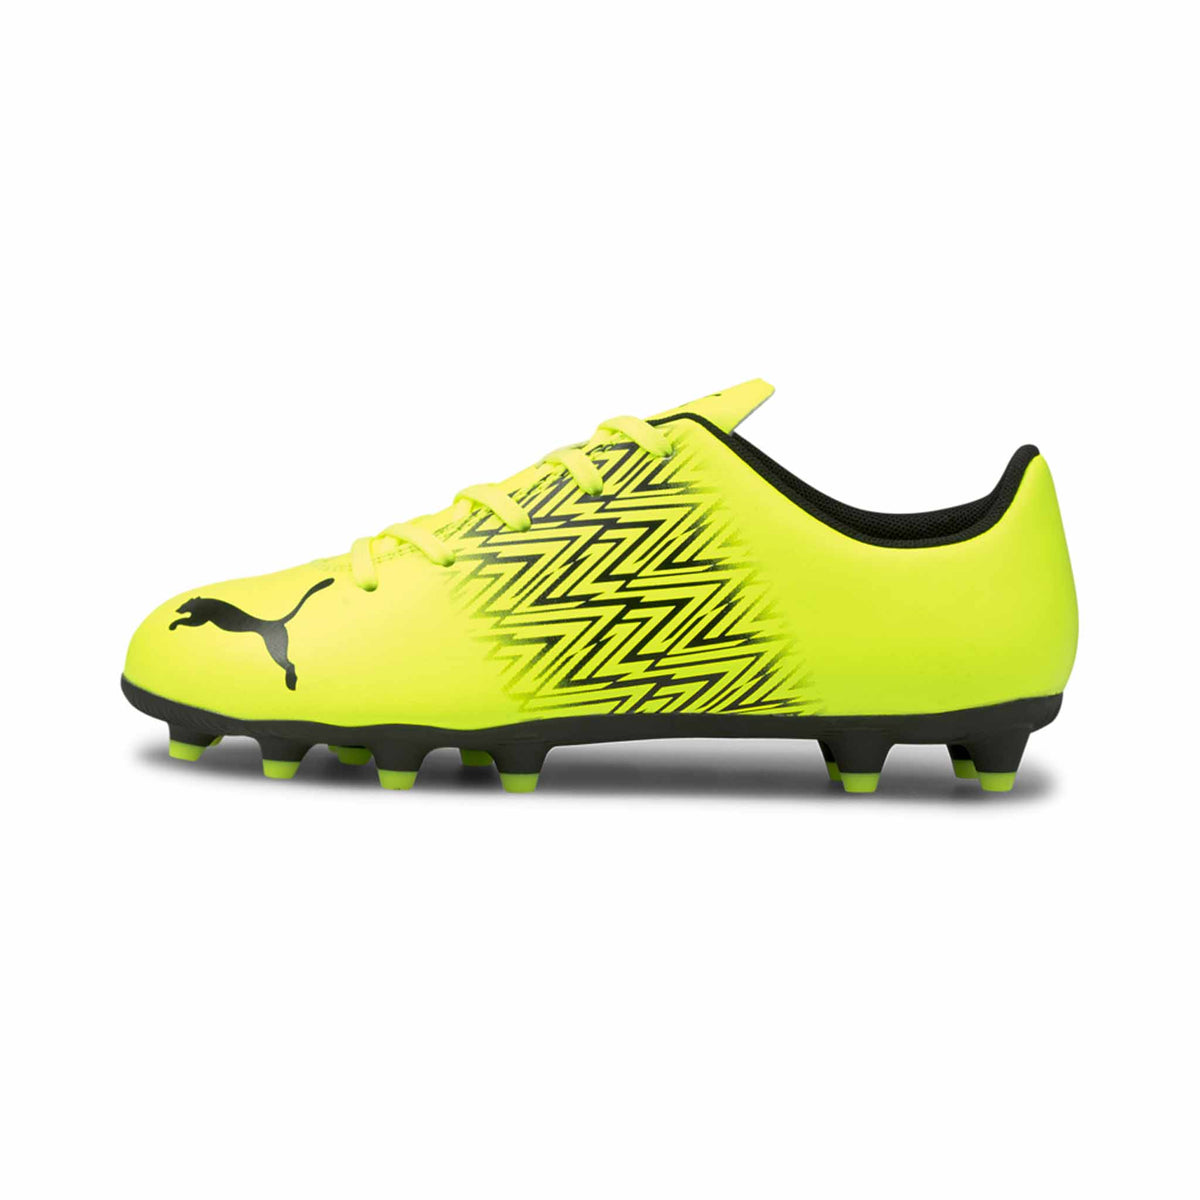 Puma Tacto FG/AG Junior chaussures de soccer enfant Jaune / Noir